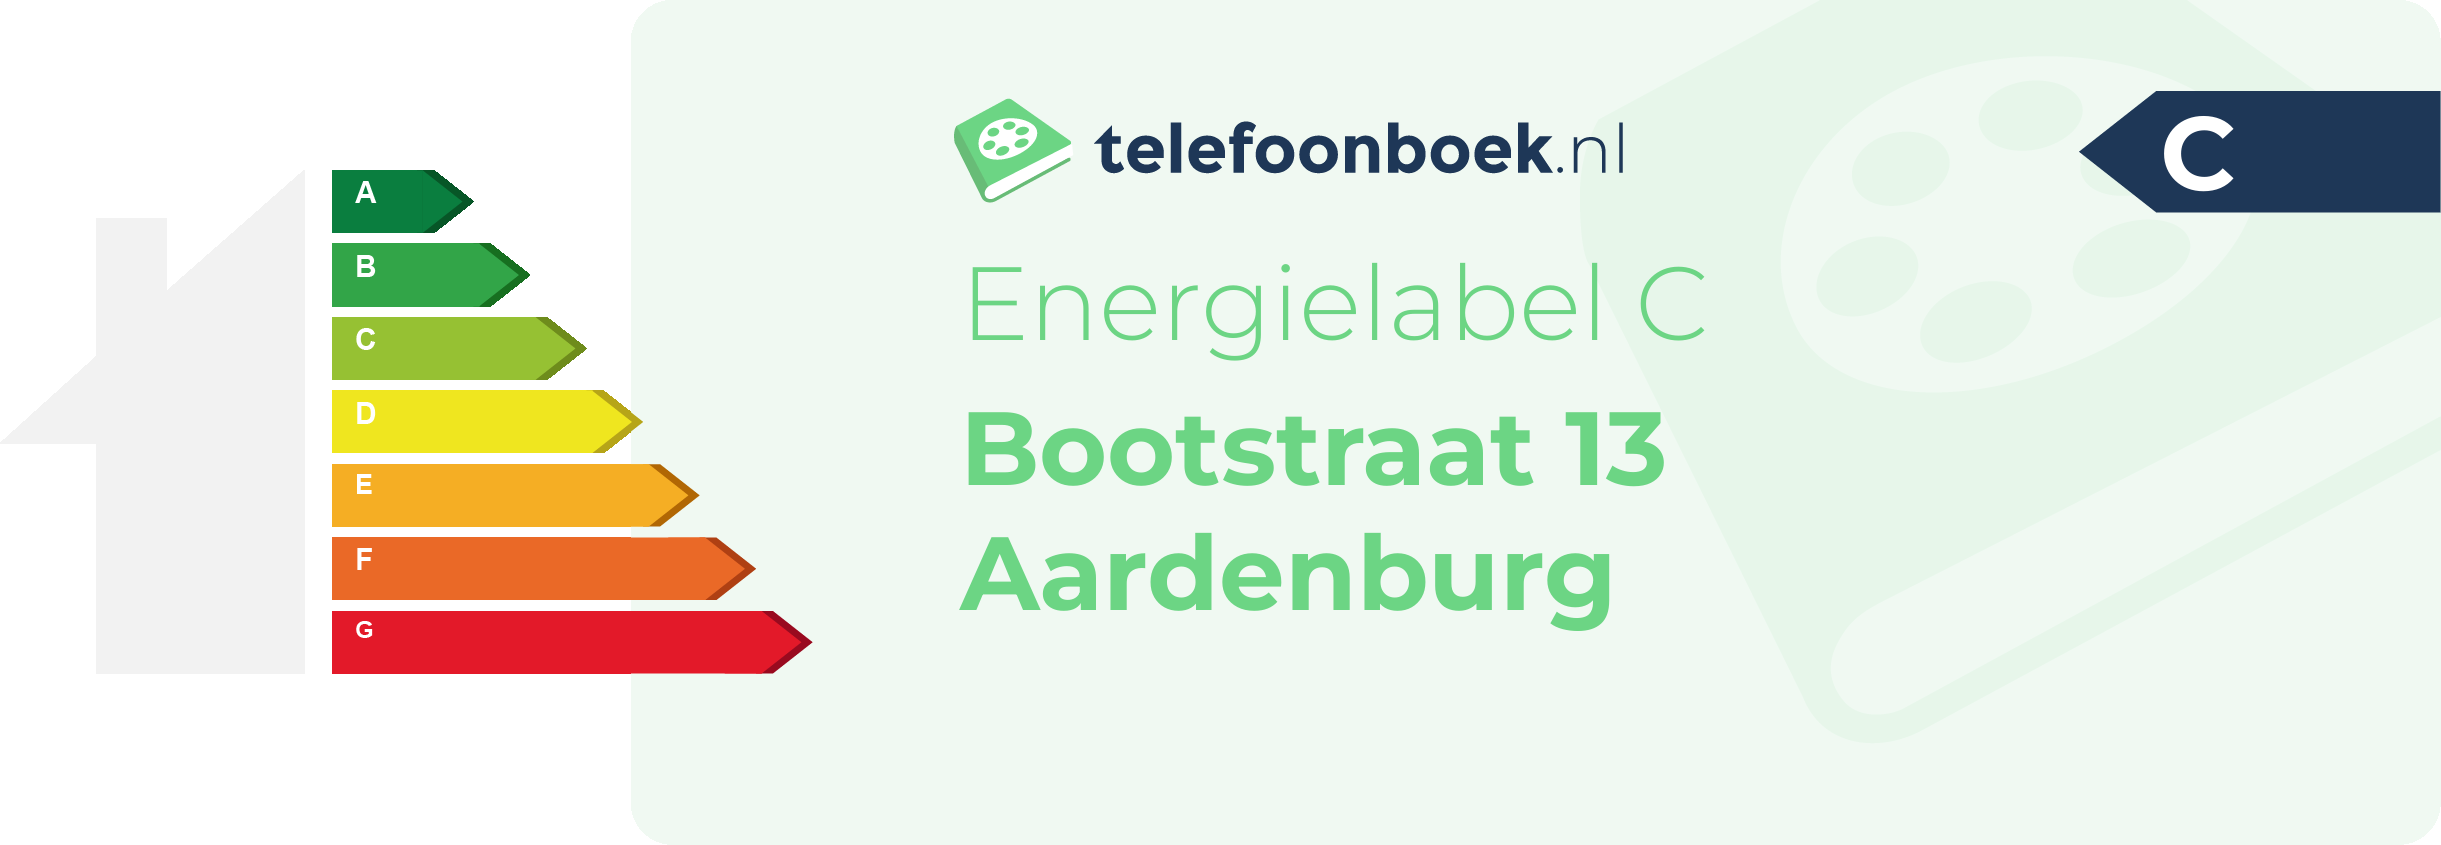 Energielabel Bootstraat 13 Aardenburg